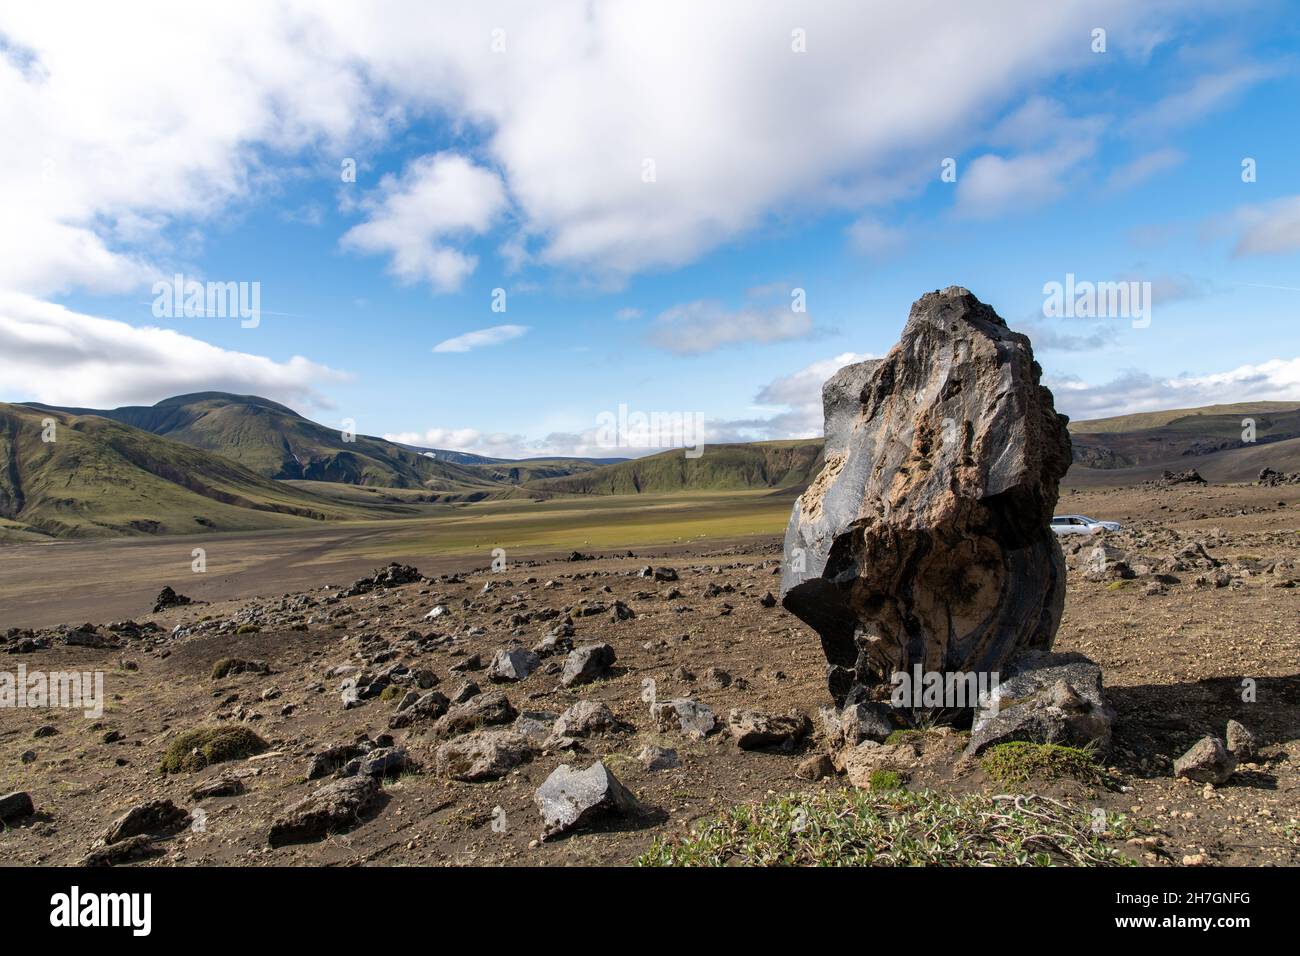 Primo piano di un pezzo di pietra basaltica con vista panoramica ad alto angolo sull'altopiano vulcanico vicino al vulcano Katla in Islanda Foto Stock